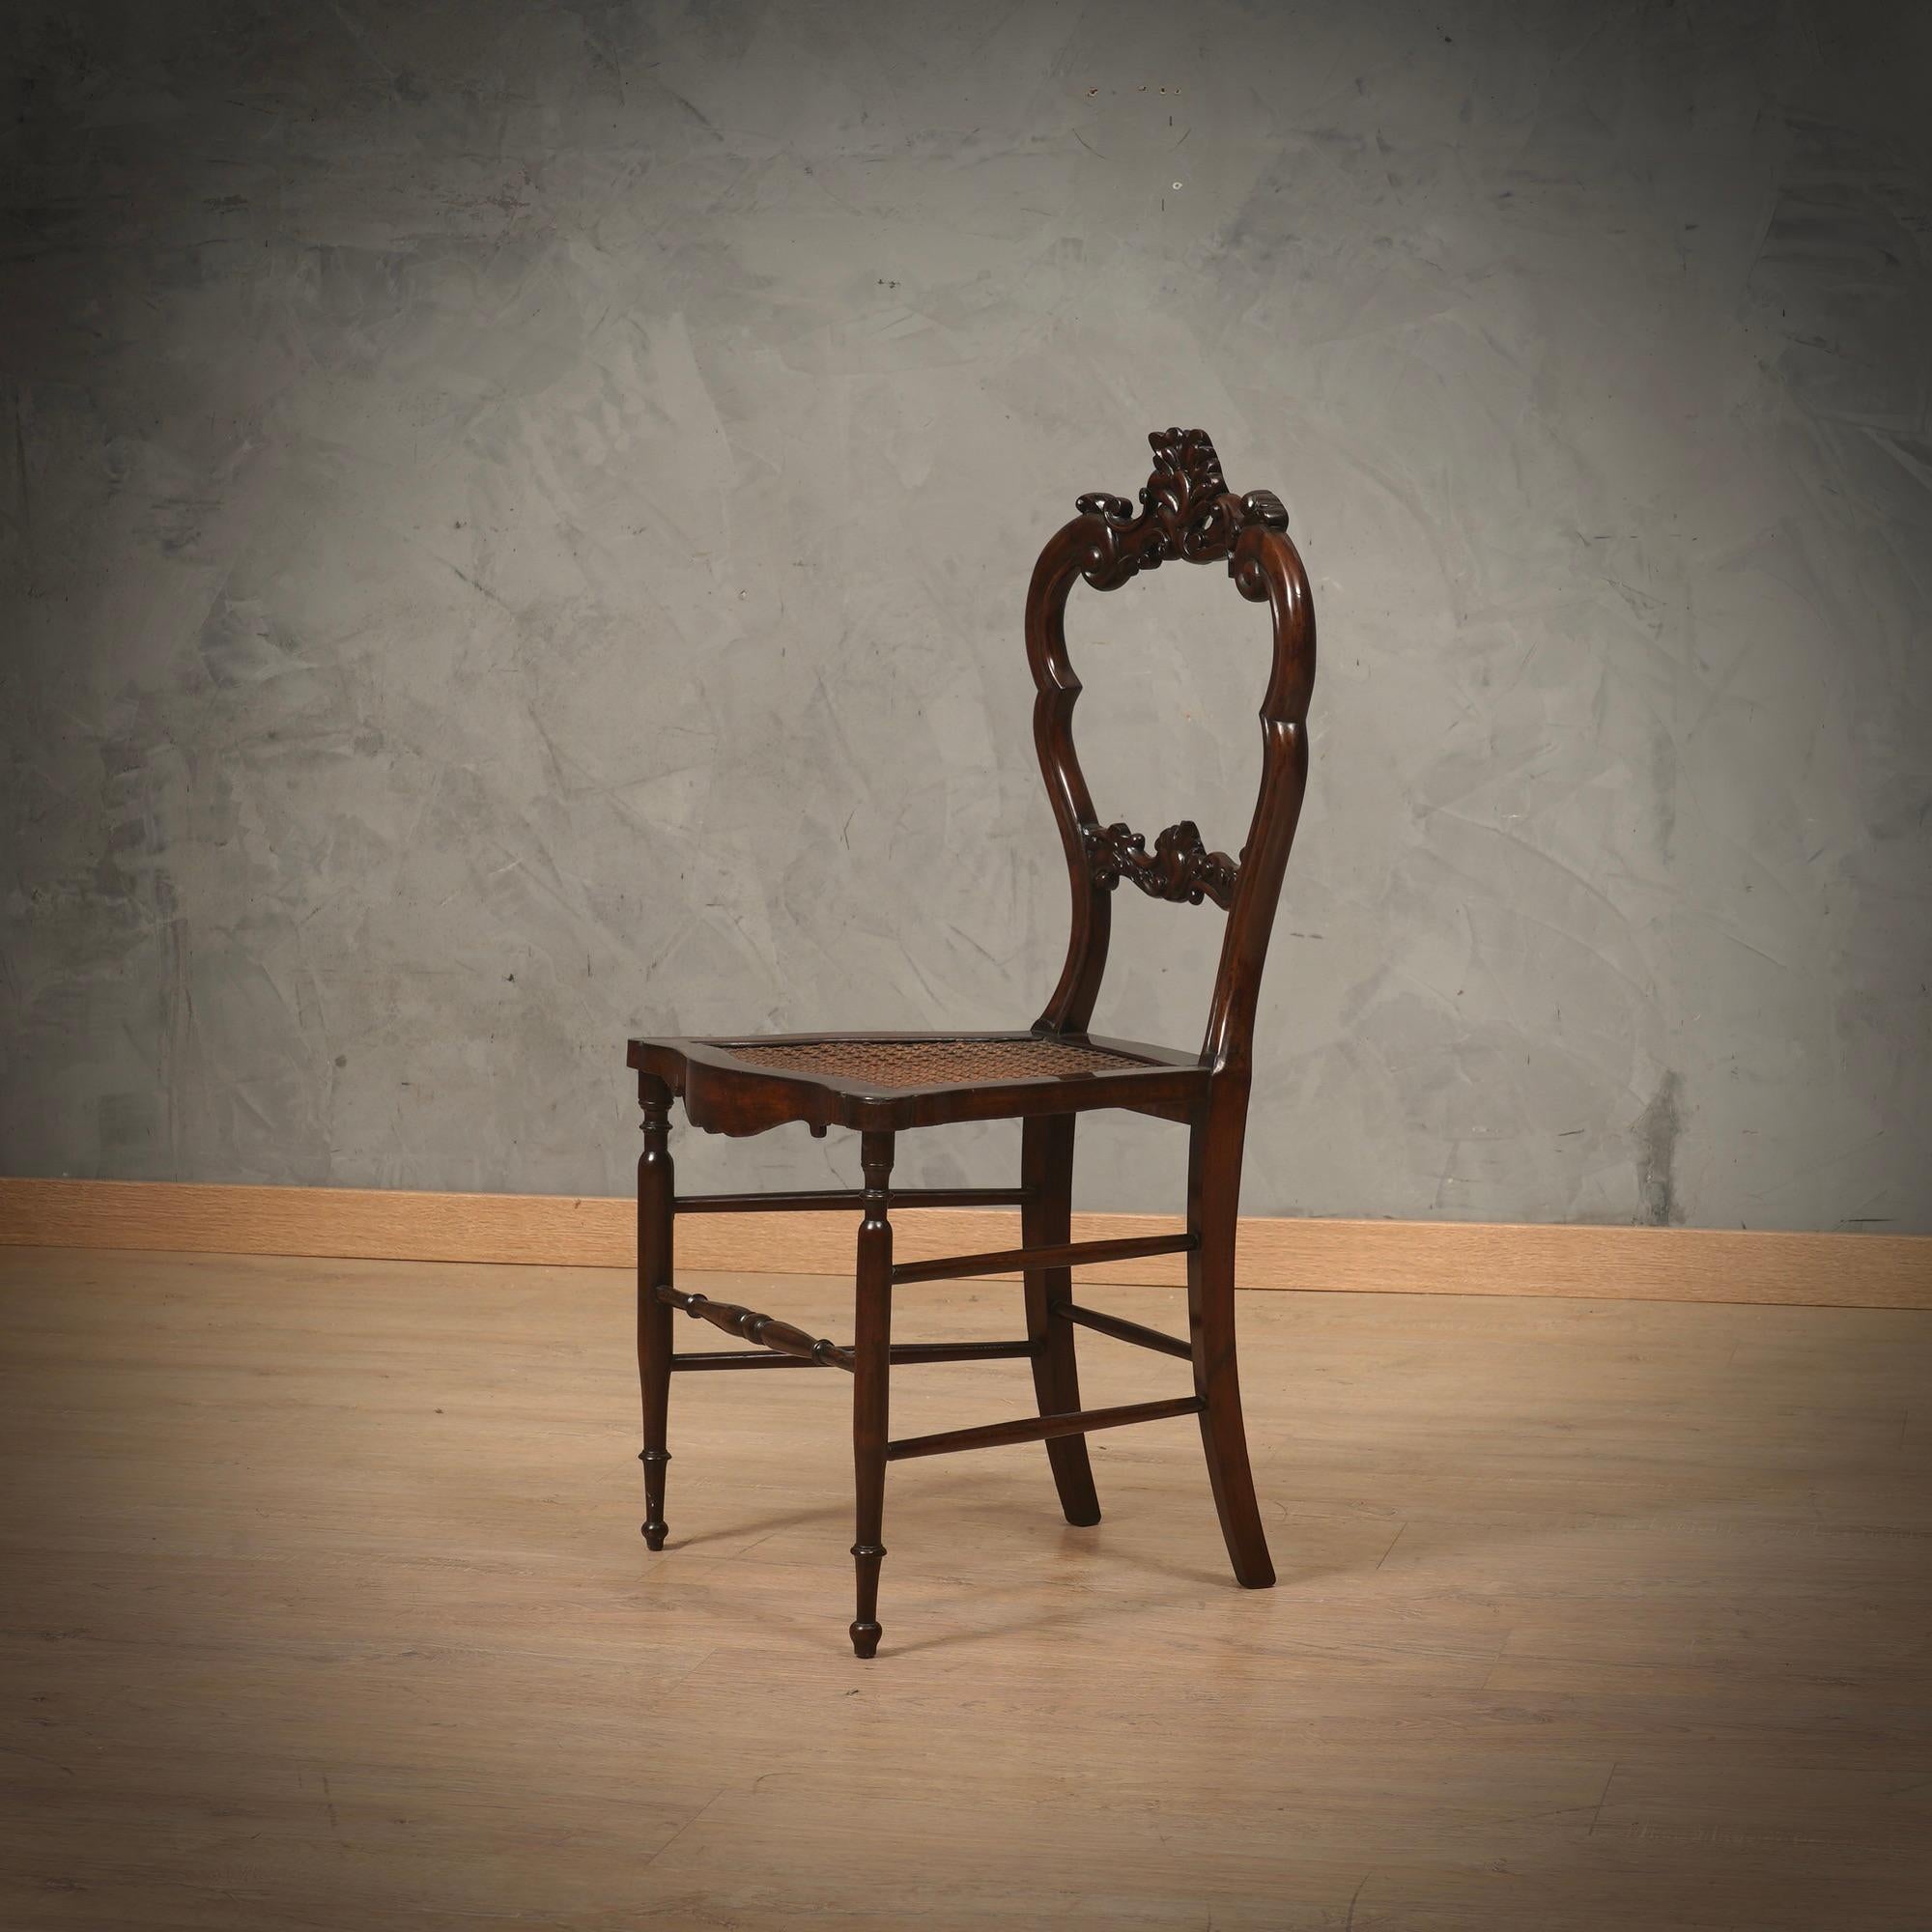 Elegant in ihrer Wesentlichkeit, reich und sehr gut verarbeitetes Holz, der Stuhl ist super leicht. Skulpturenstühle als Ganzes.

Der gesamte Stuhl ist aus Walnussholz gefertigt. Handarbeit an der Rückenlehne. Die Bearbeitung der Vorderbeine auf der